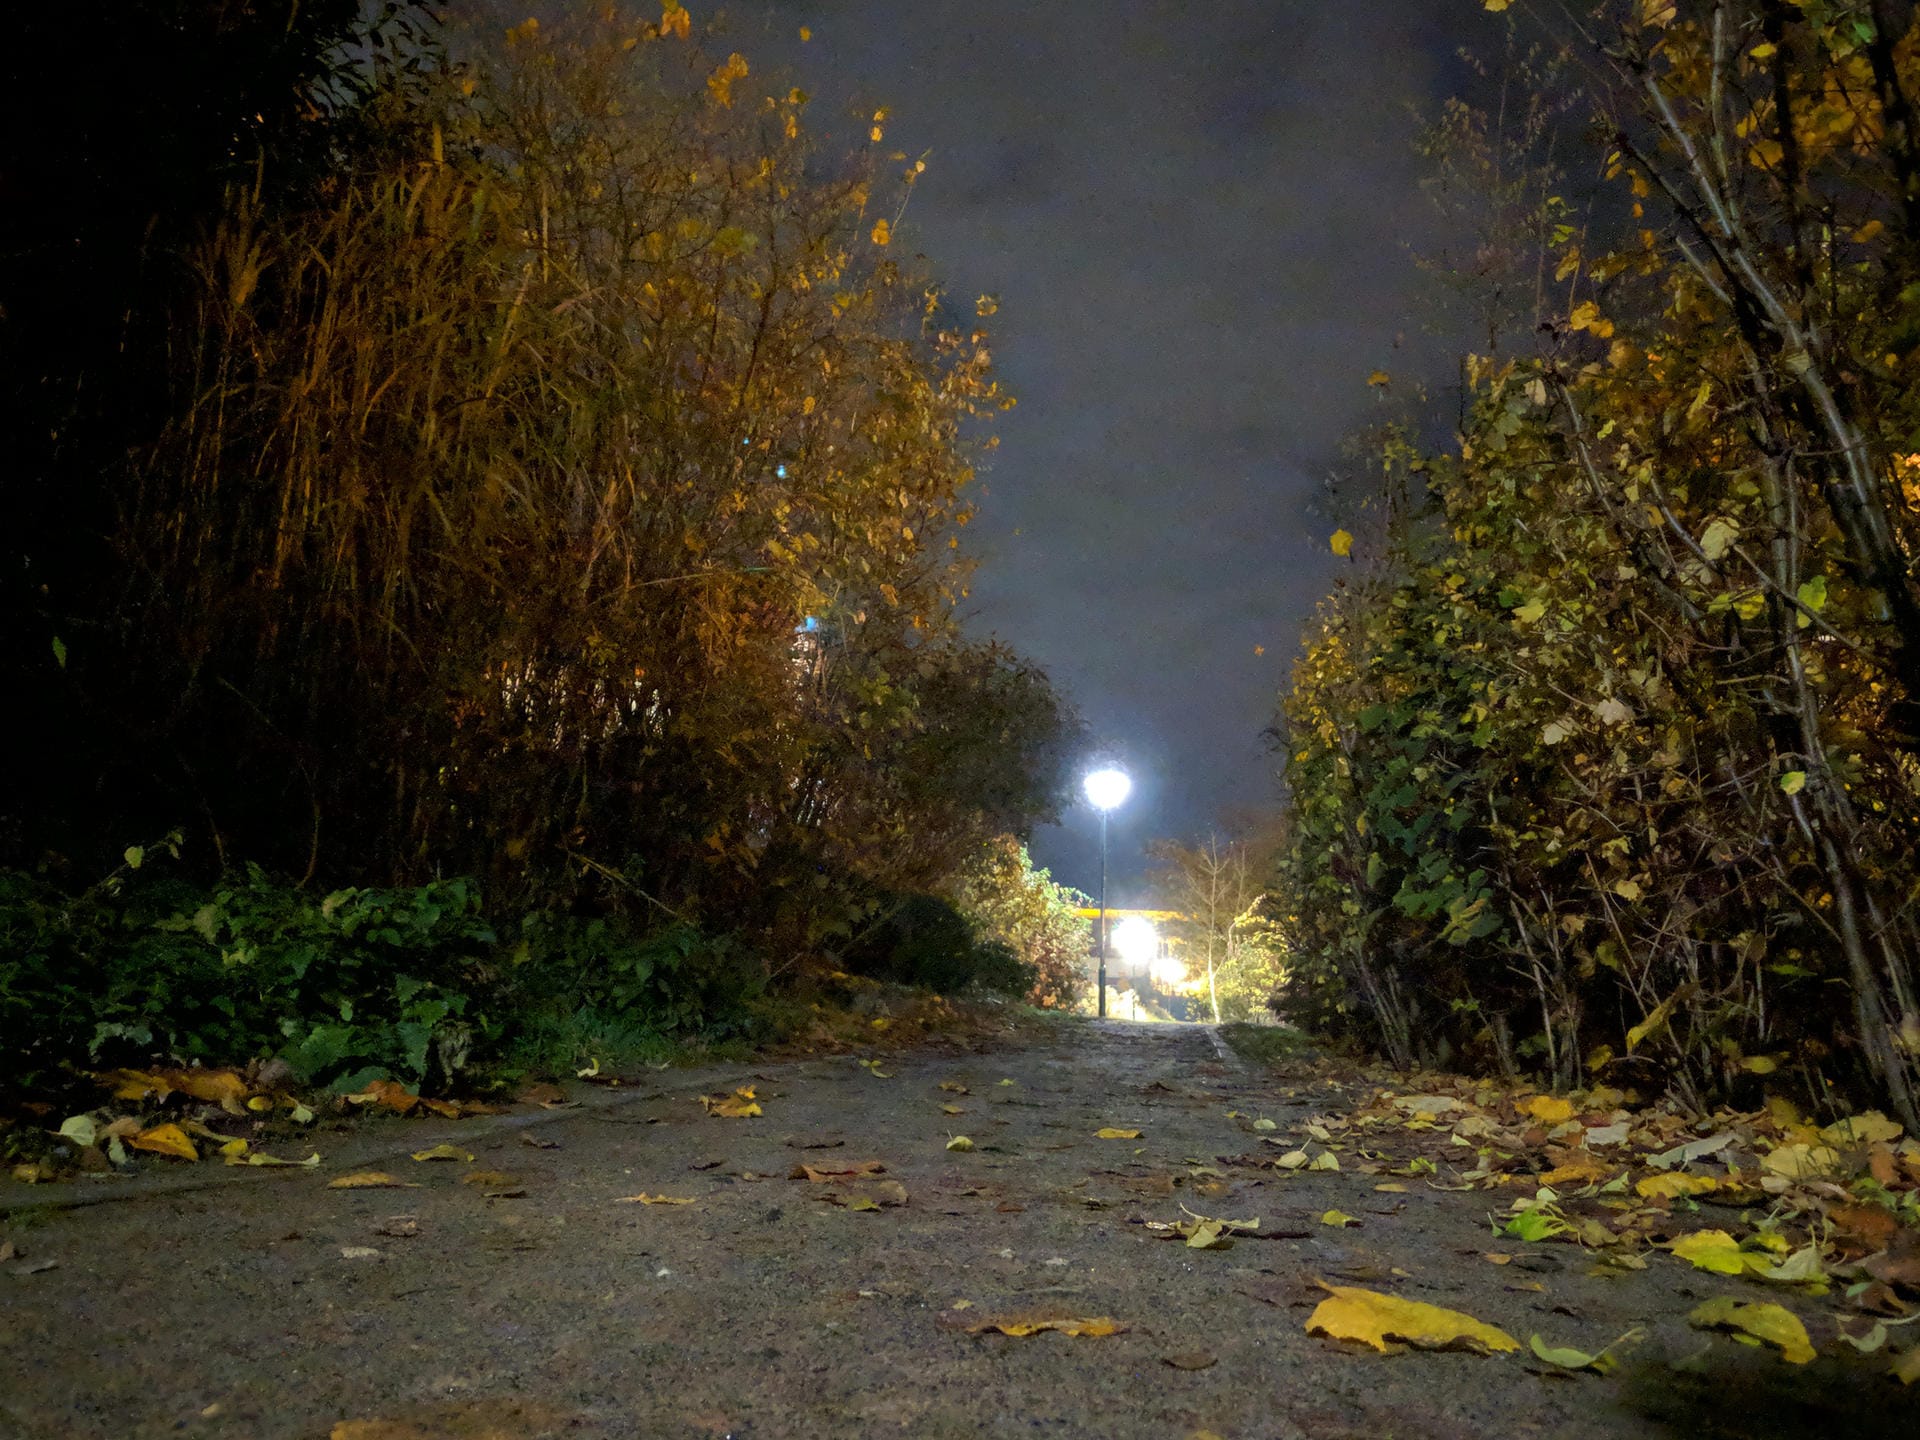 Weg bei Nacht mit Nachtsicht-Modus: Die Bilder sind deutlich heller, und Details, die im Dunkeln verborgen blieben, treten plötzlich zu Tage.